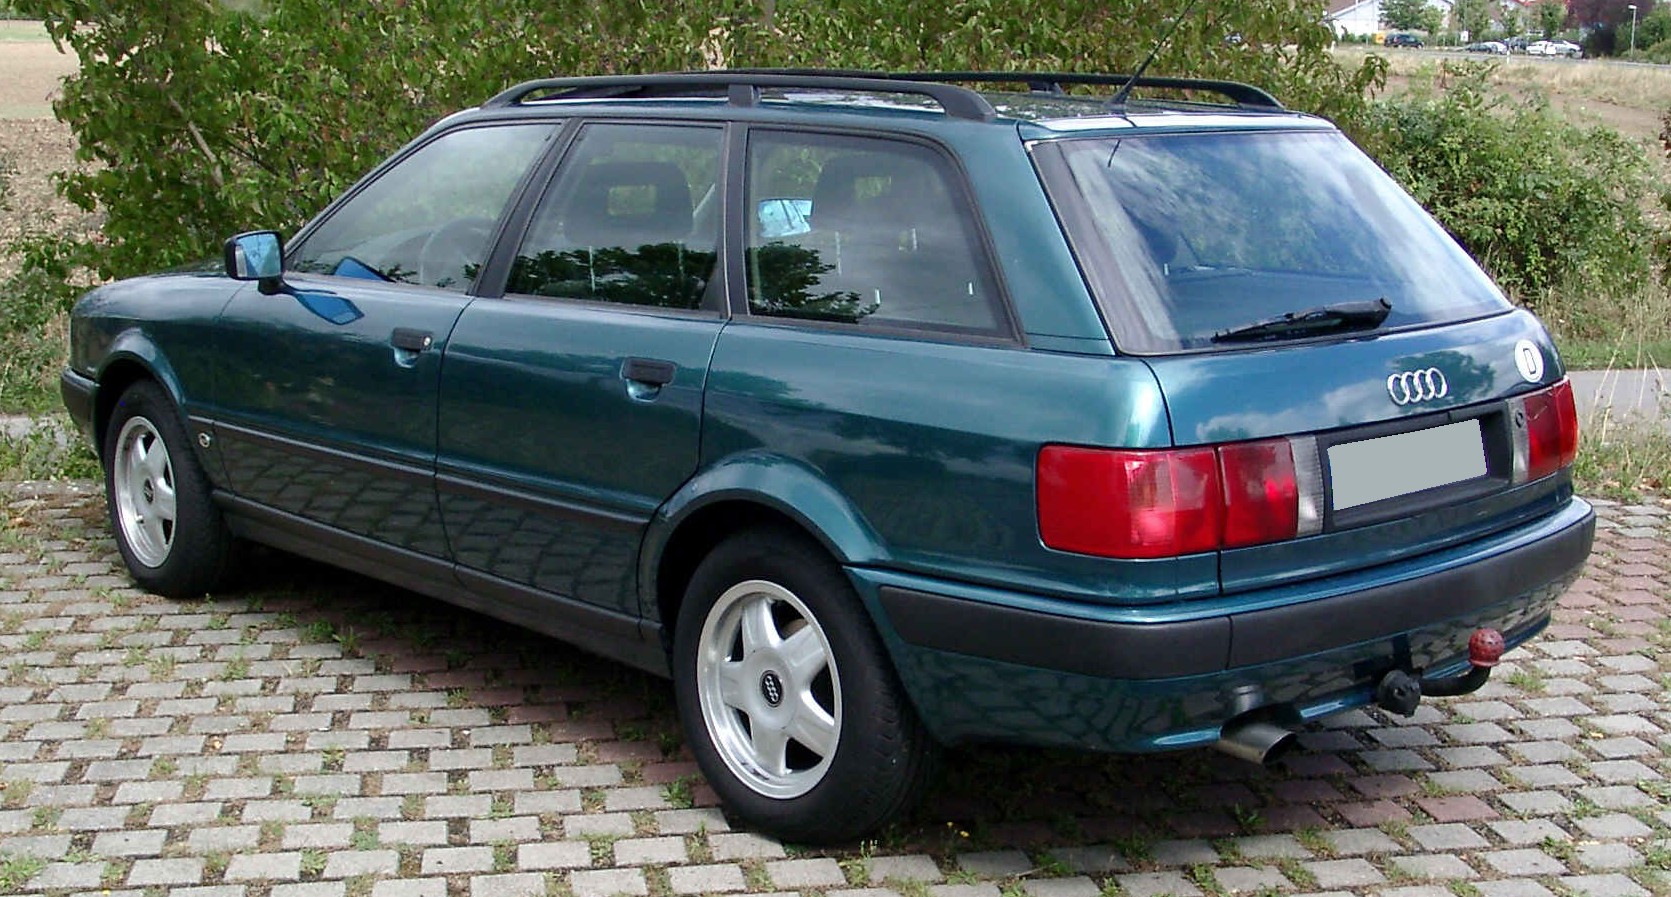 File:Audi 80 Avant rear 20080820.jpg - Wikimedia Commons